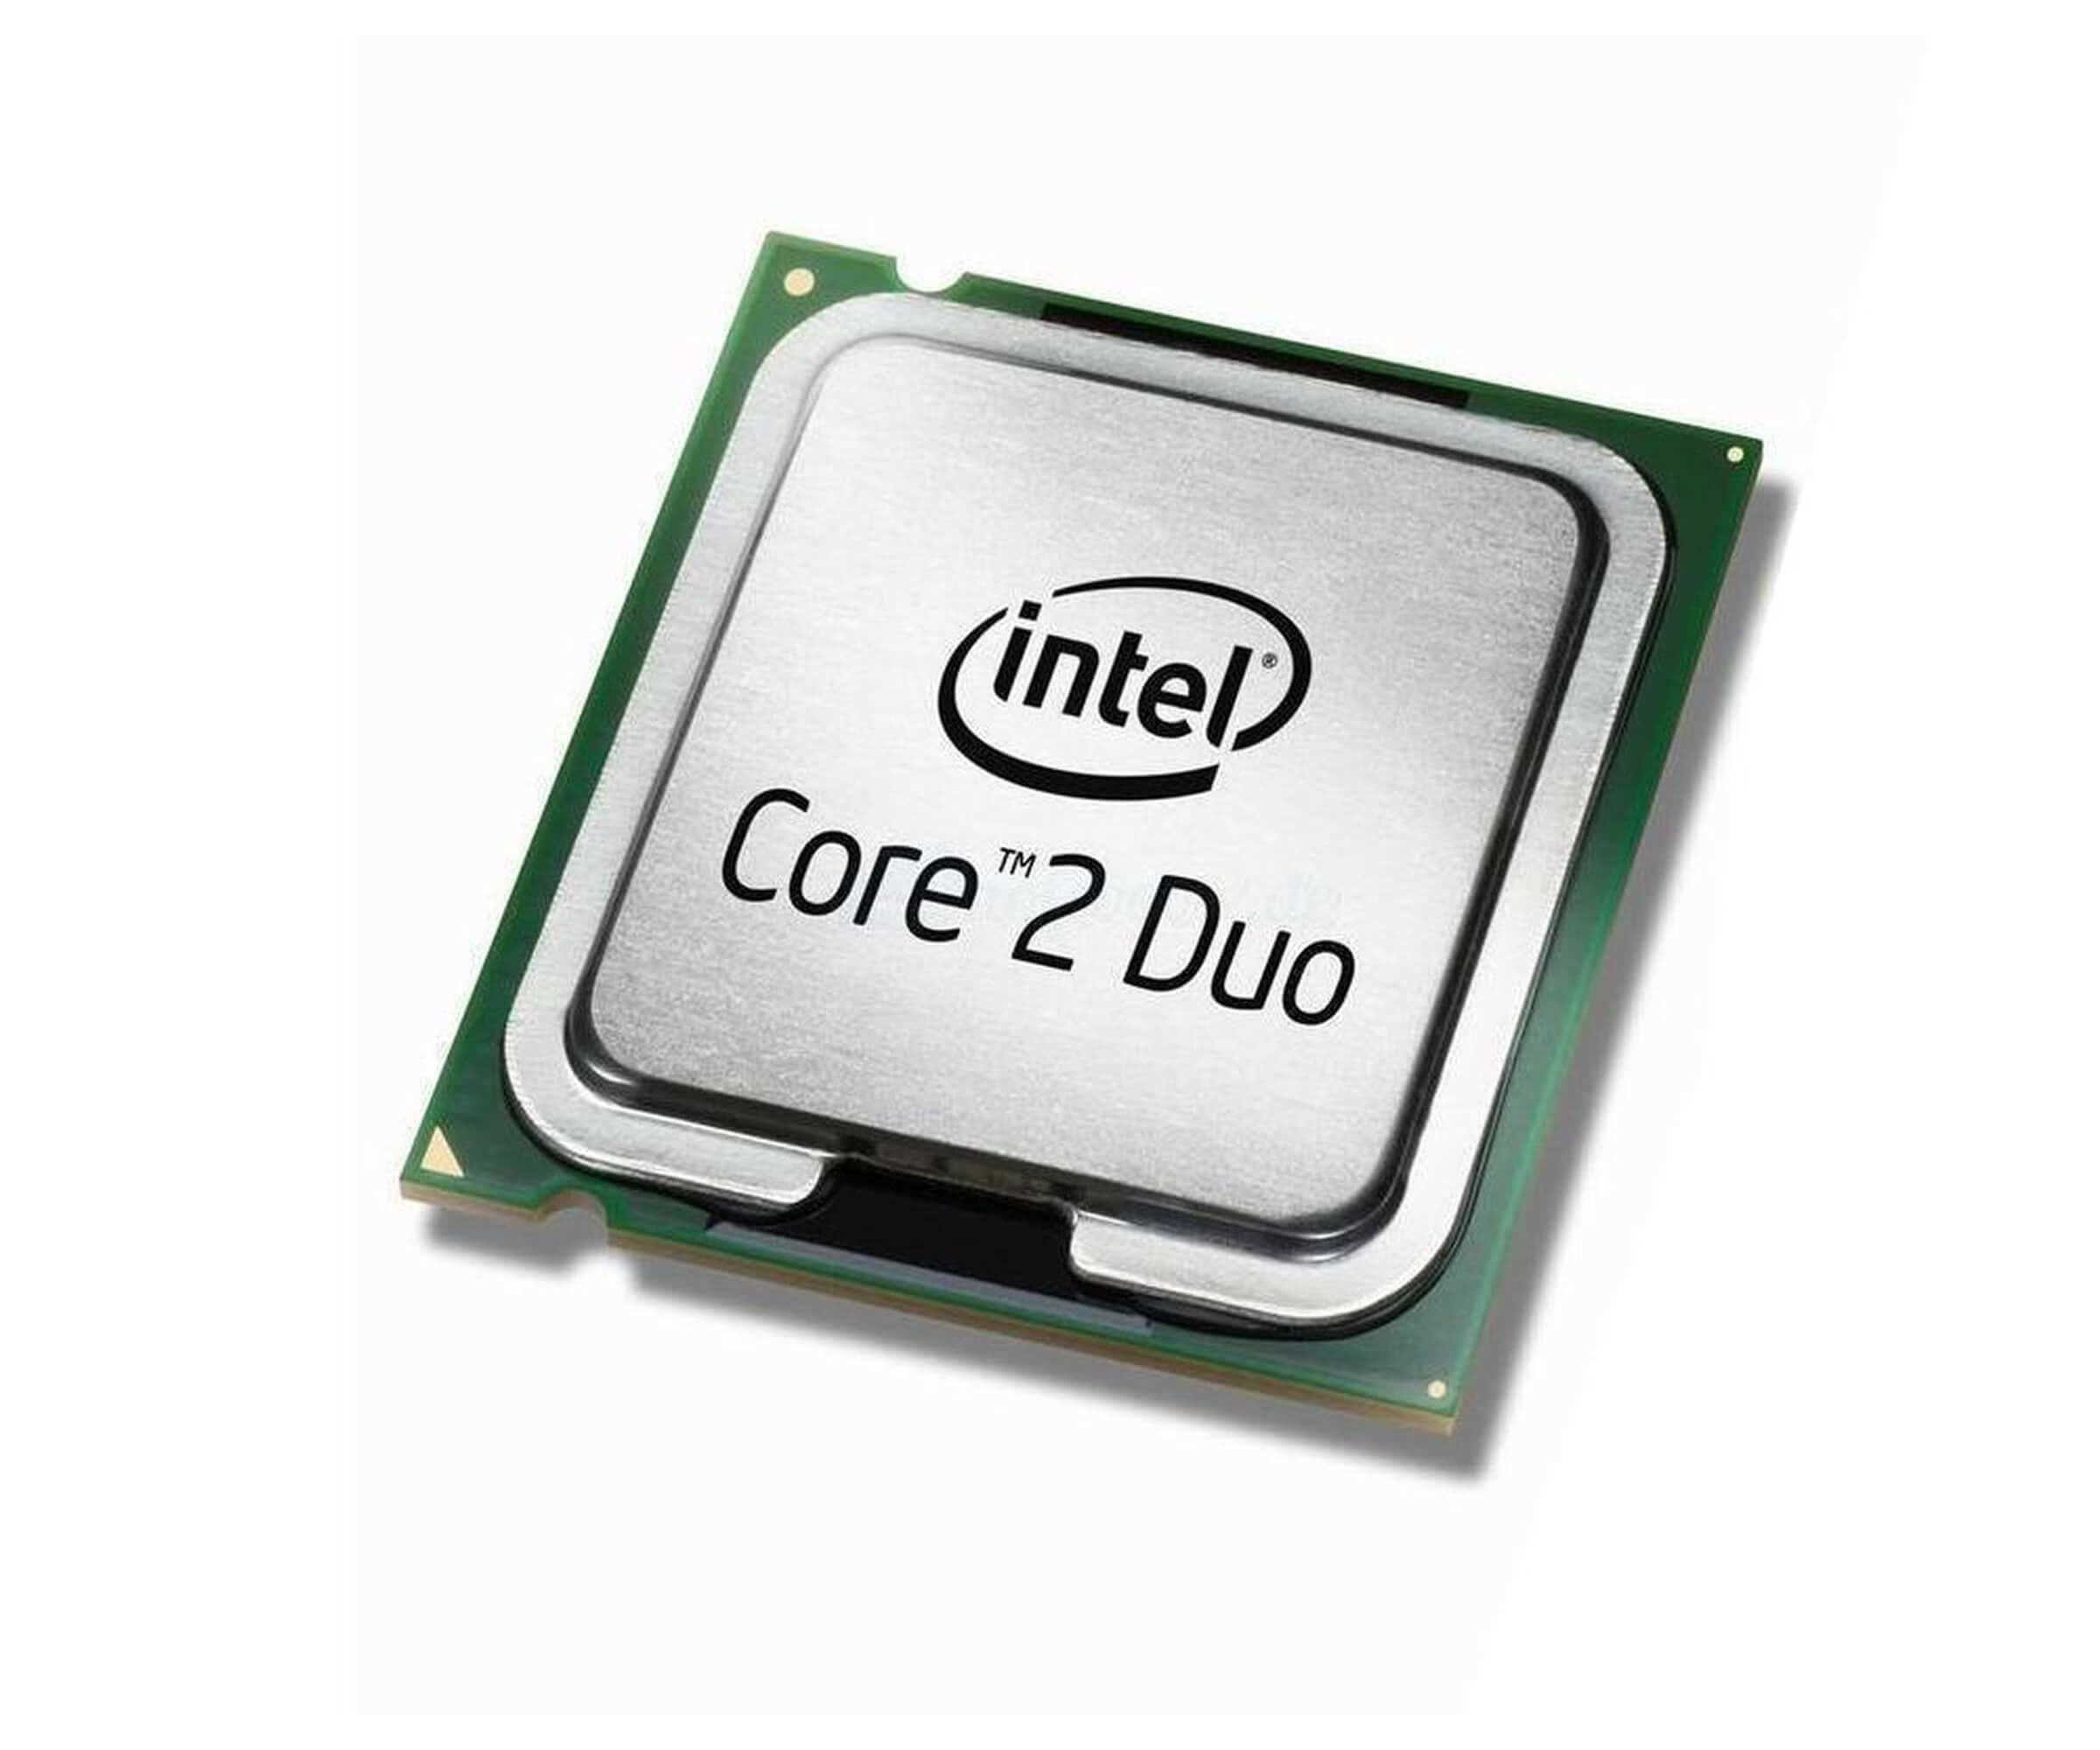 SL95W | Intel Dual Core 3.2GHz 4MB 800MHz FSB 940 Processor